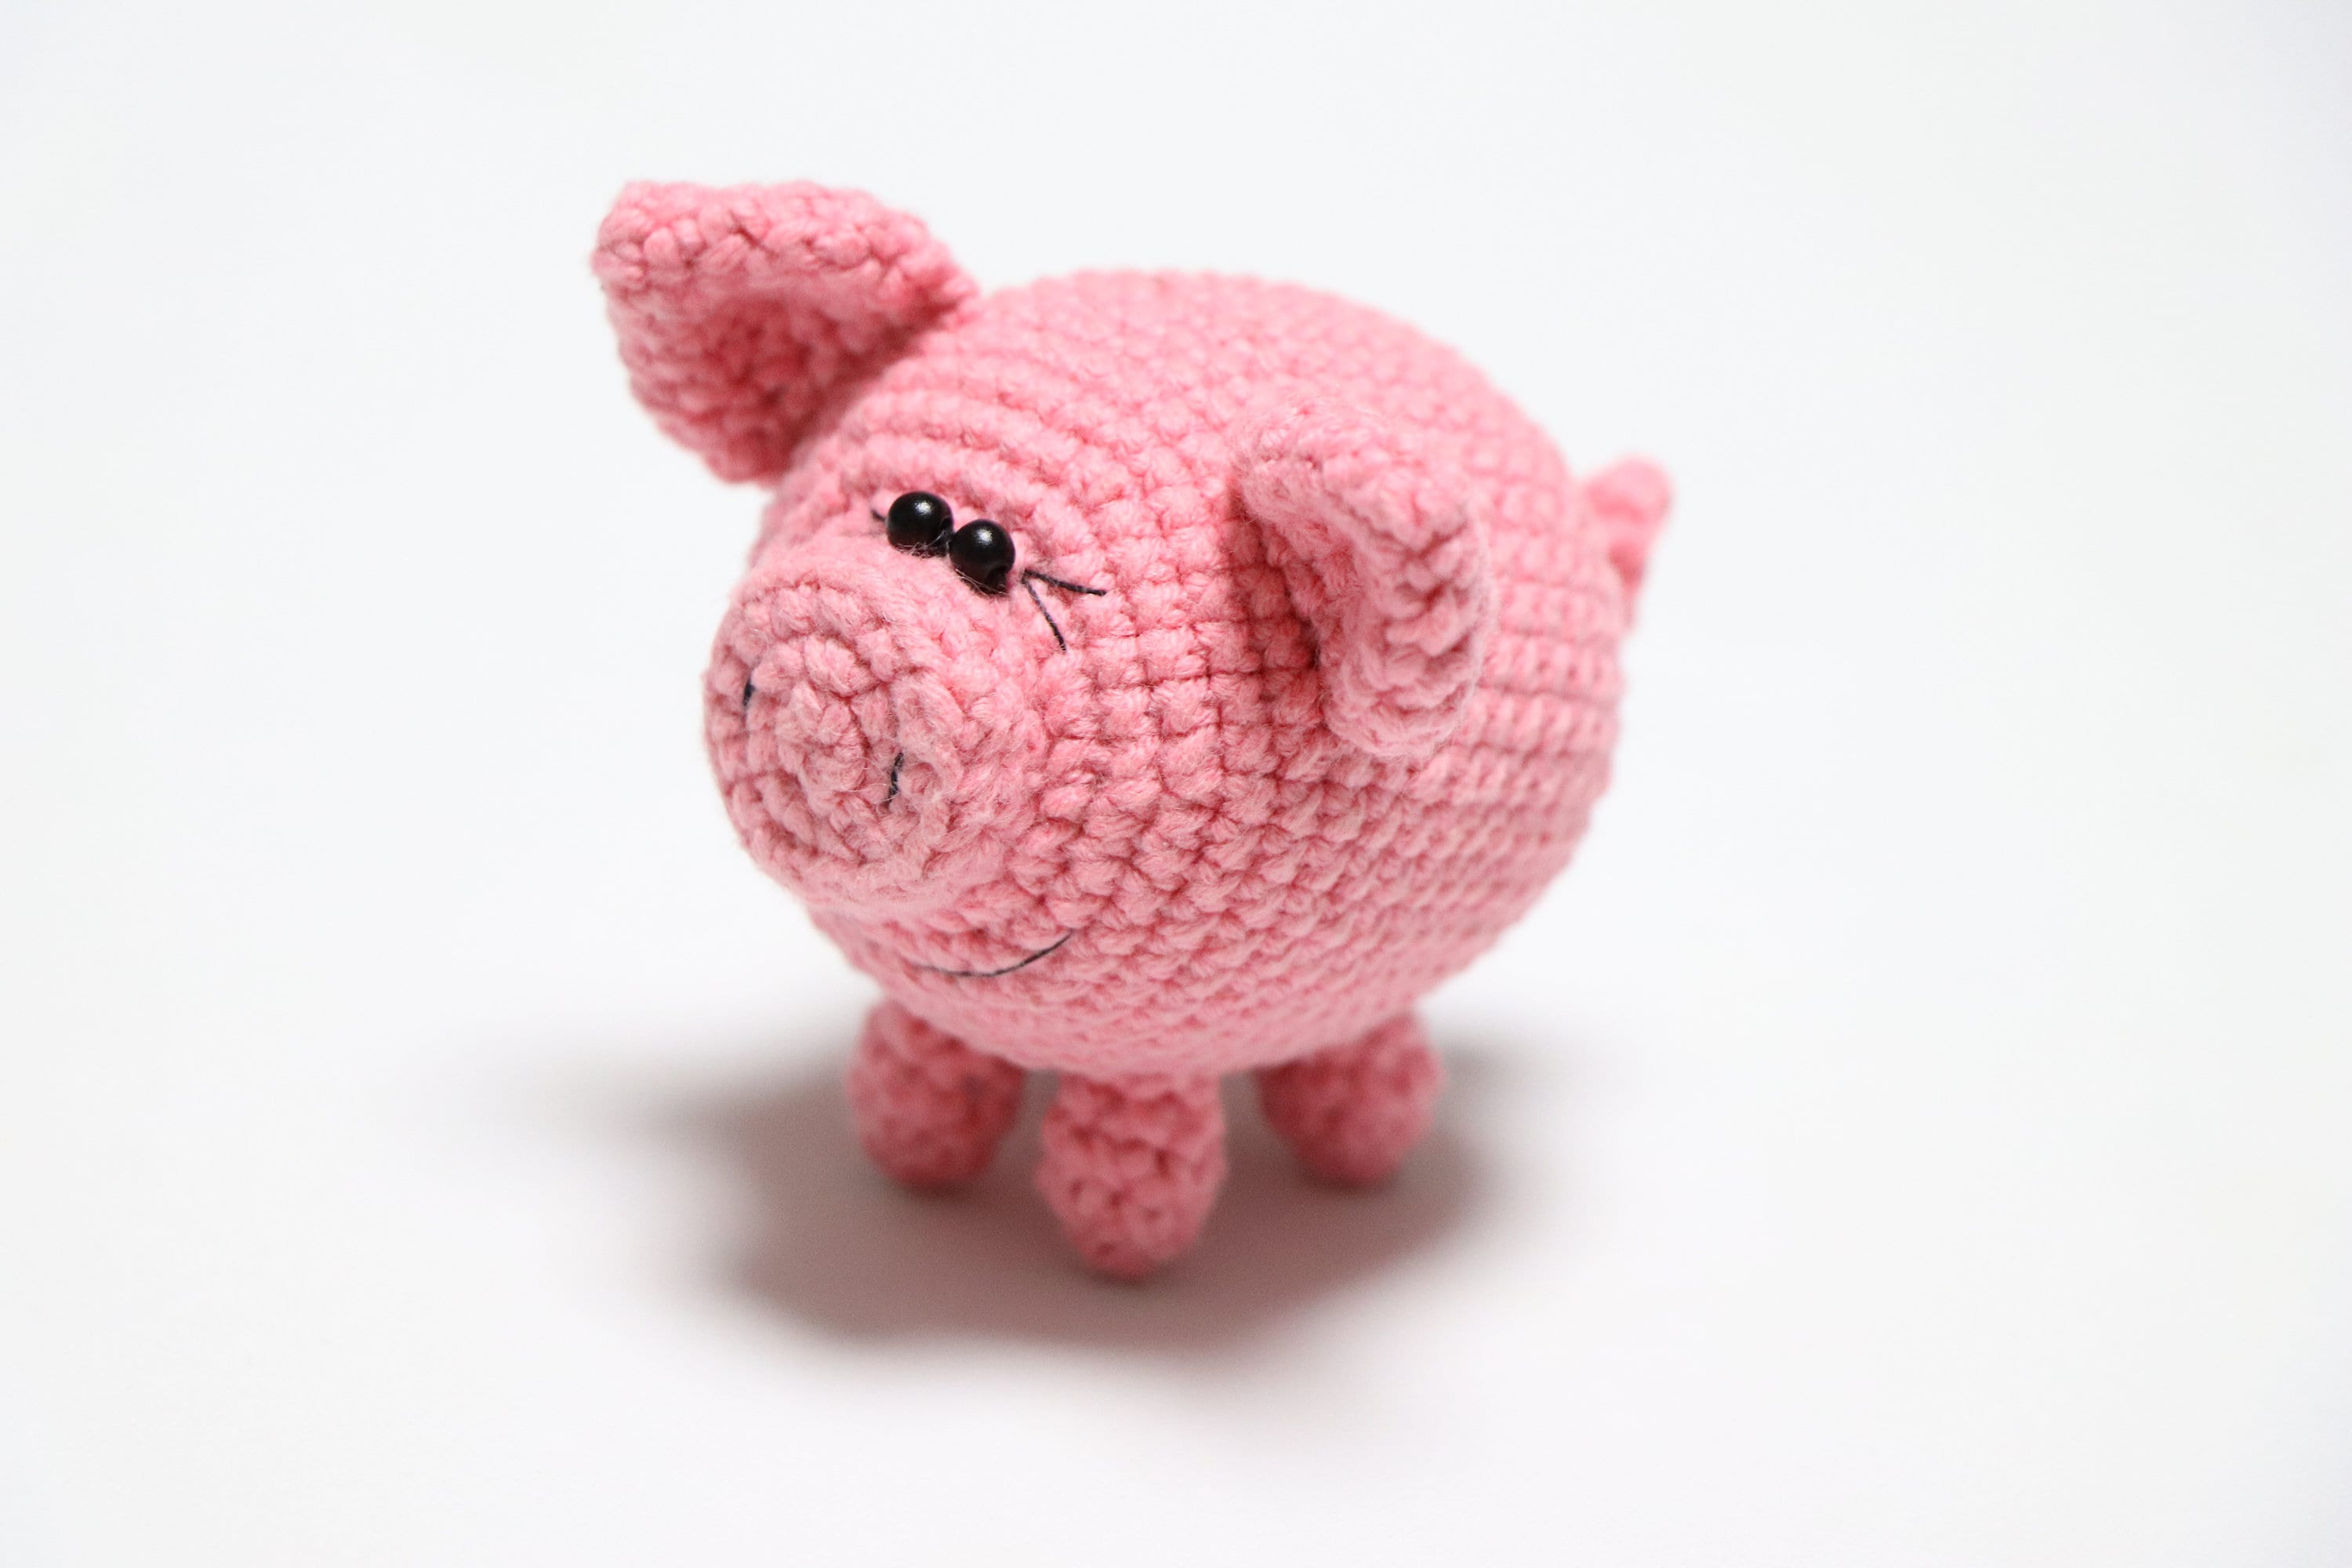 Crochet pig pattern easy amigurumi pattern piglet tiny pig | Etsy